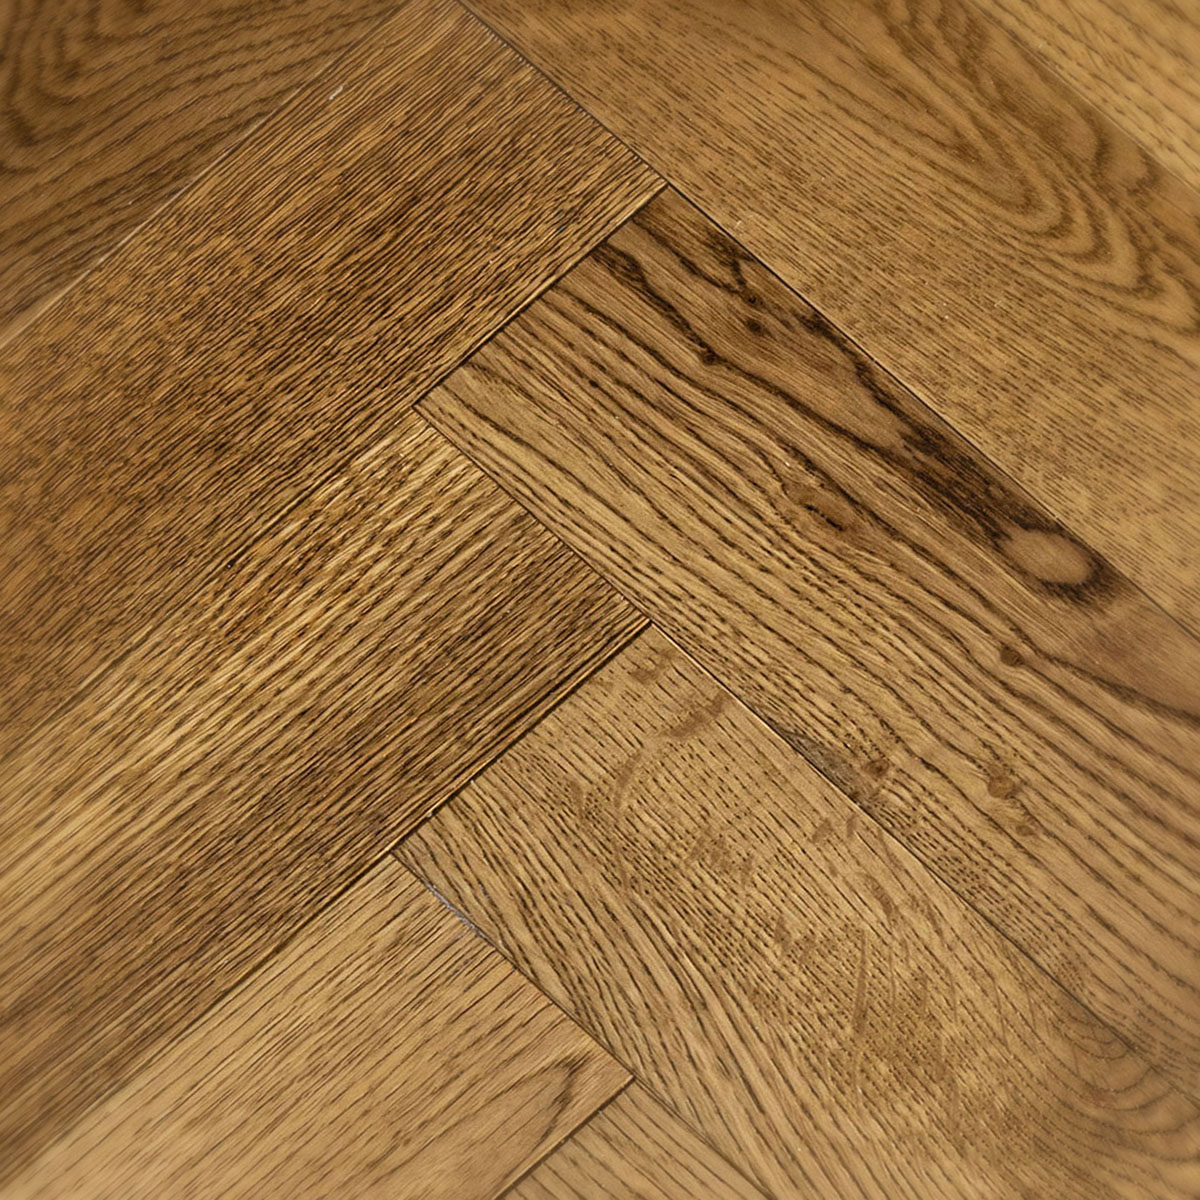 Bourne Road - Rustic Grade Medium Oak Herringbone Floor